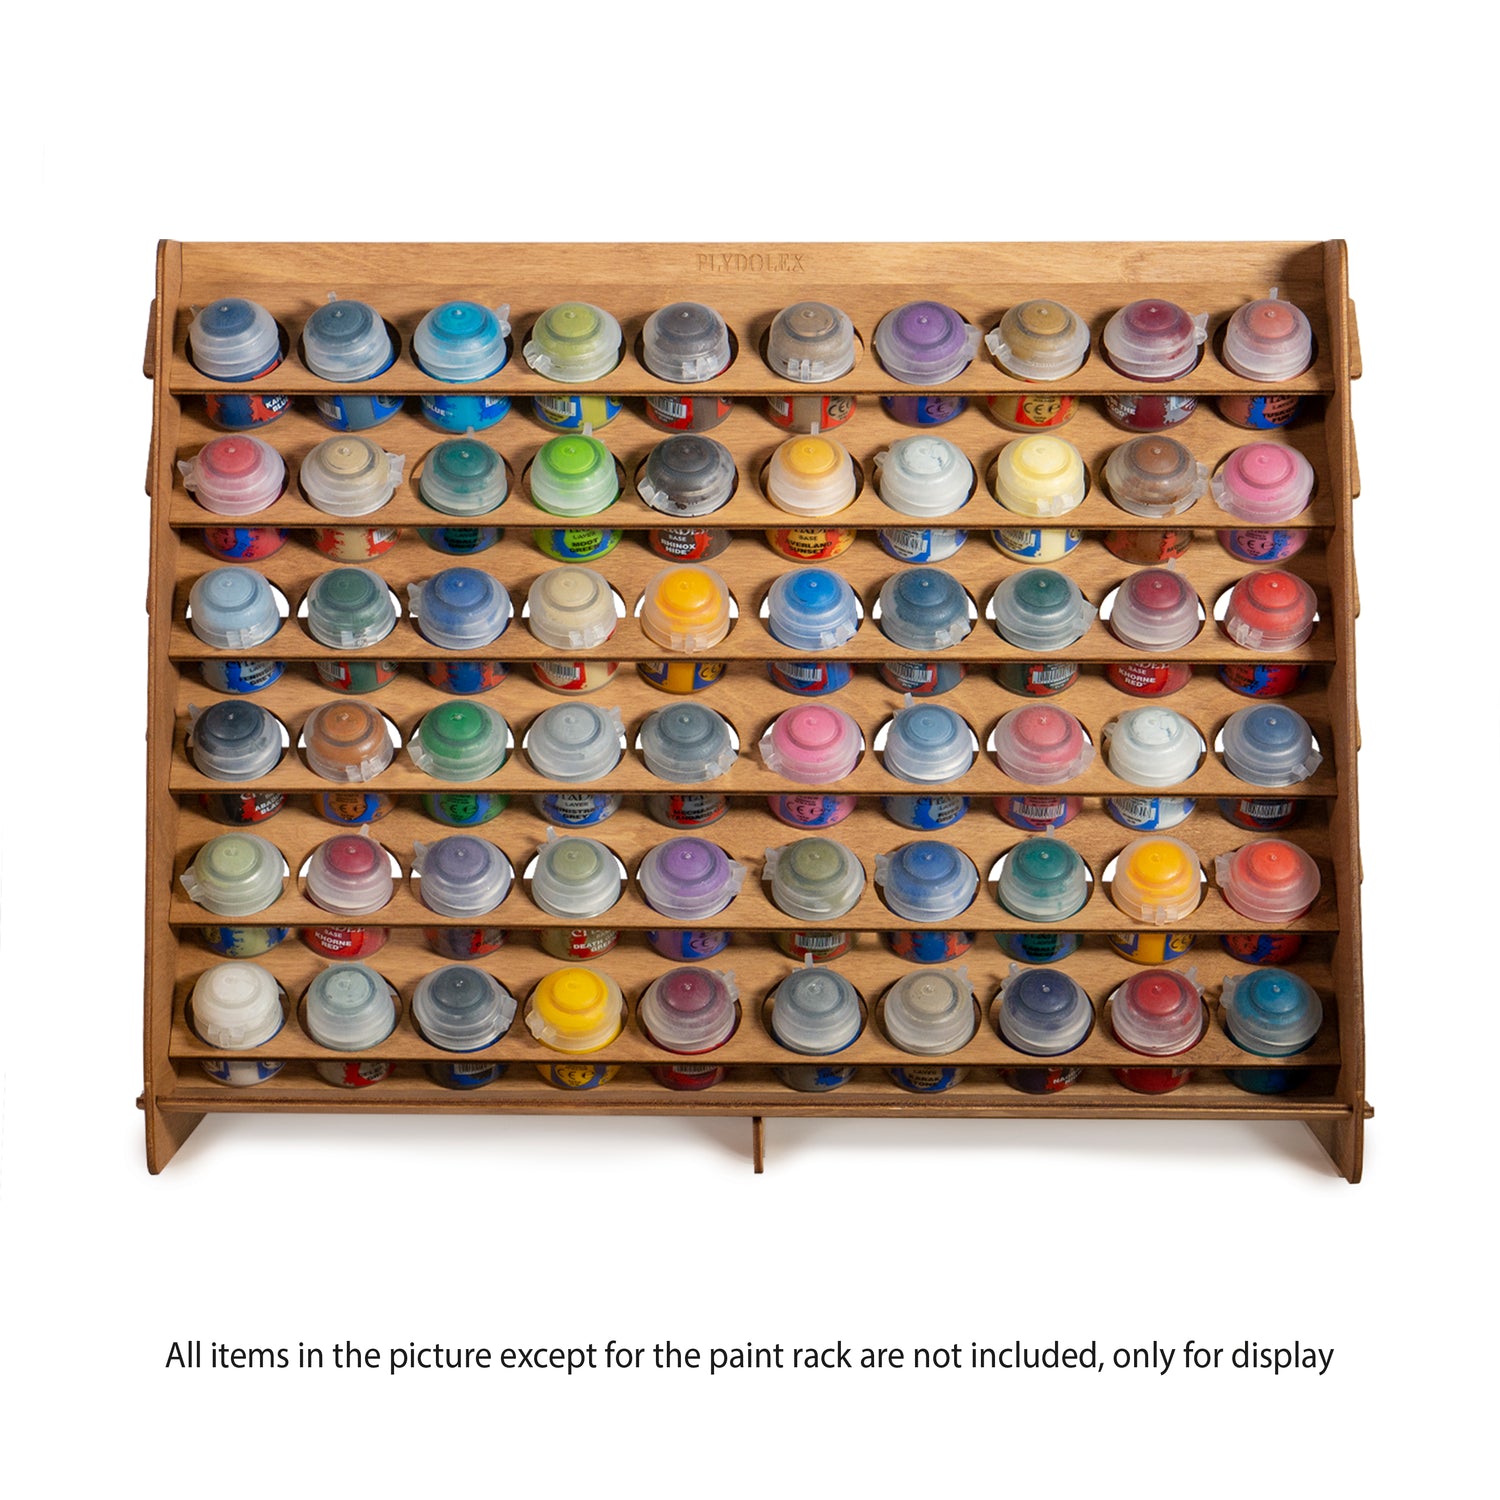  Plydolex Paint Rack Organizer with 54 Holes Suitable